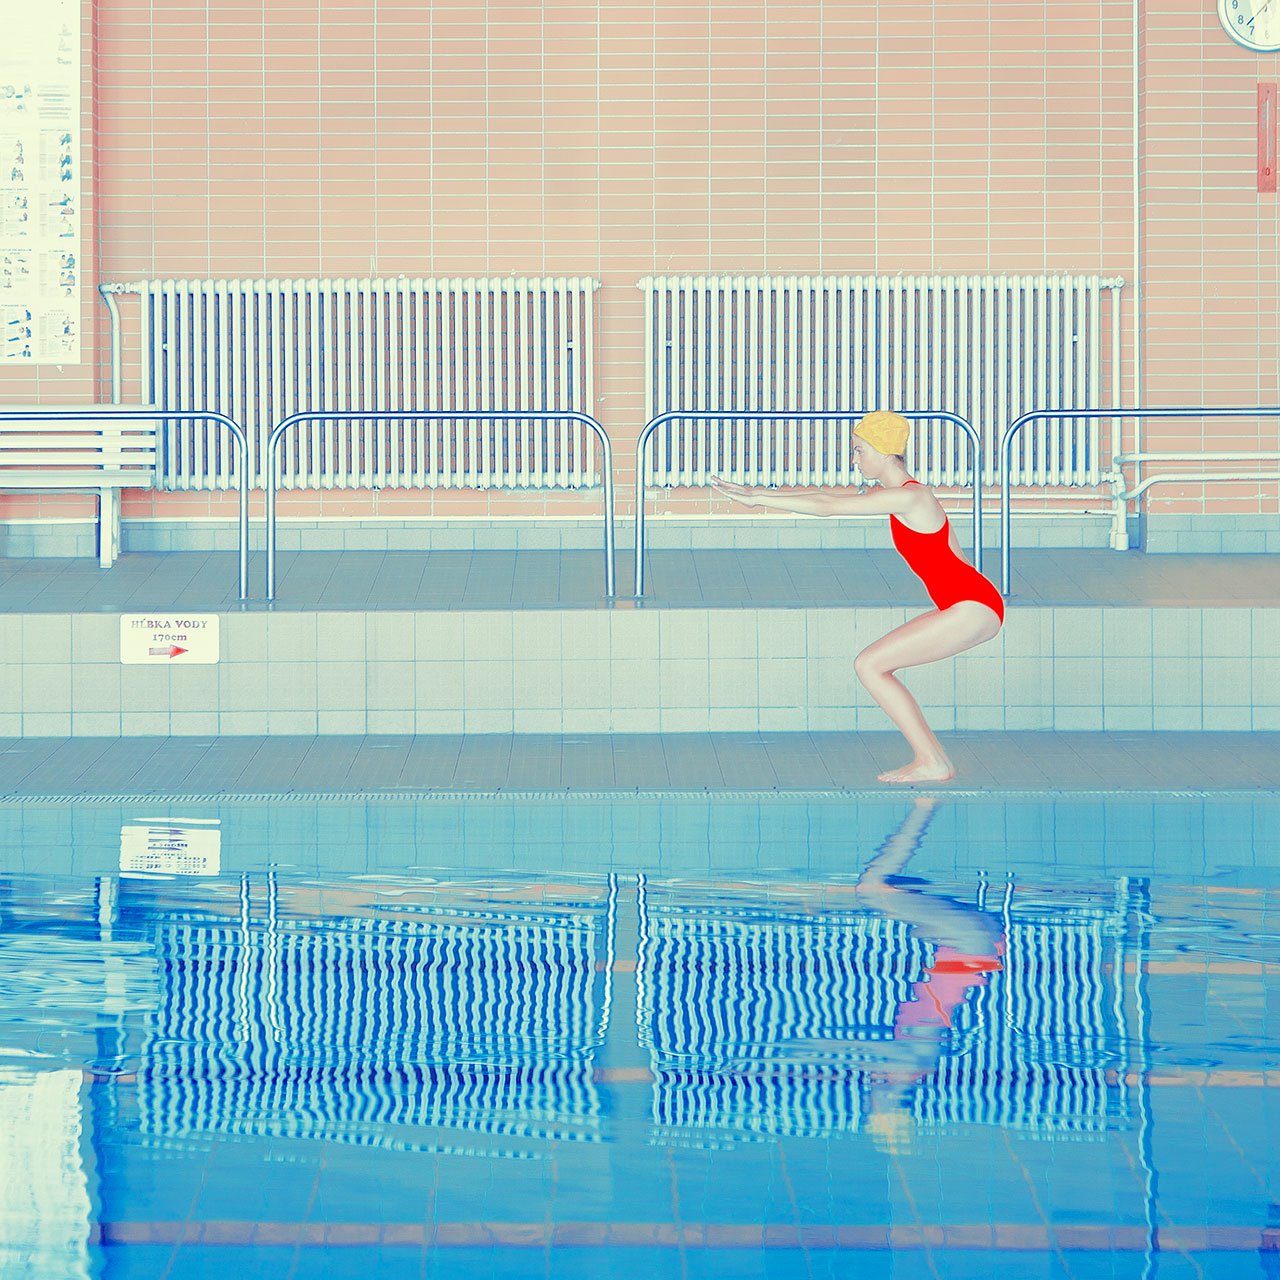 玛丽亚 Švarbová，游泳系列。 © 玛丽亚 Švarbová。